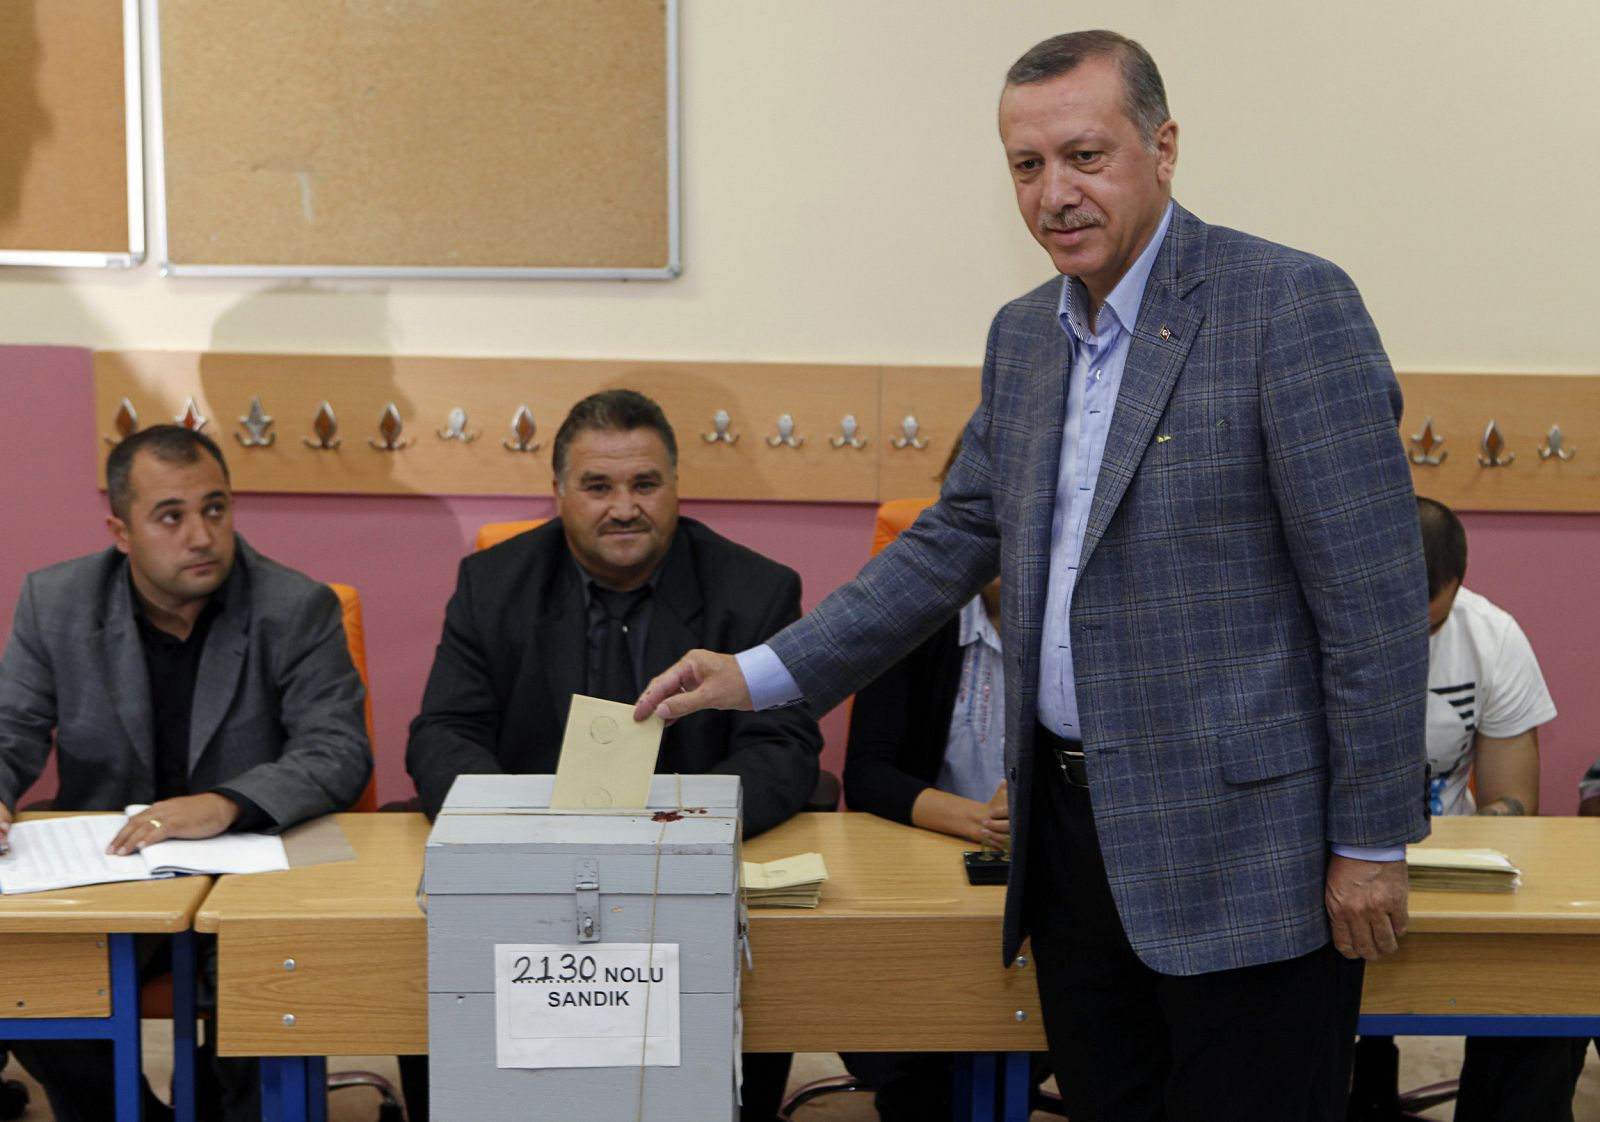 Con la aprobación de la reforma constitucional, el primer ministro turco Tayyip Erdogan ve reforzadas sus posibilidades de ser reelegido.